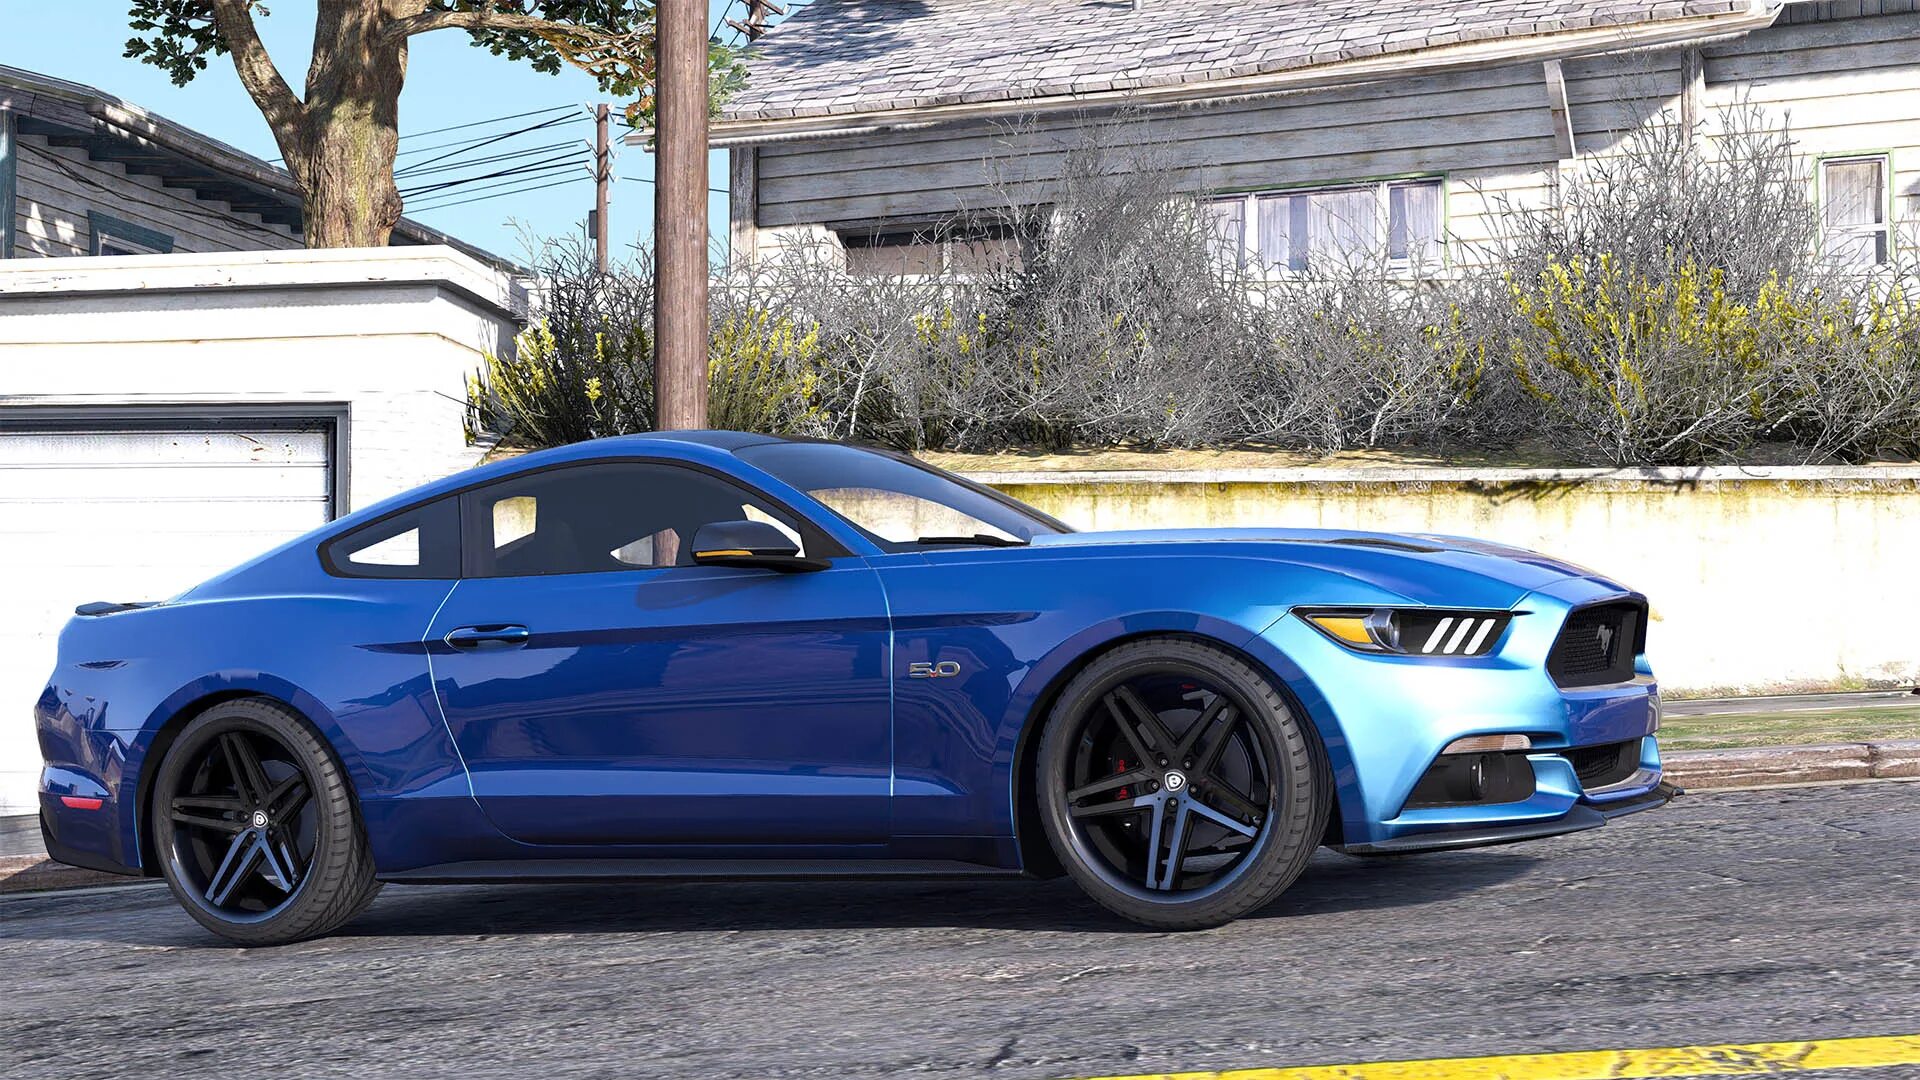 Ford Mustang 2015 GTA 5. Mustang 2020 GTA 5. NFS 2015 Ford Mustang gt. Мустанг в гта 5